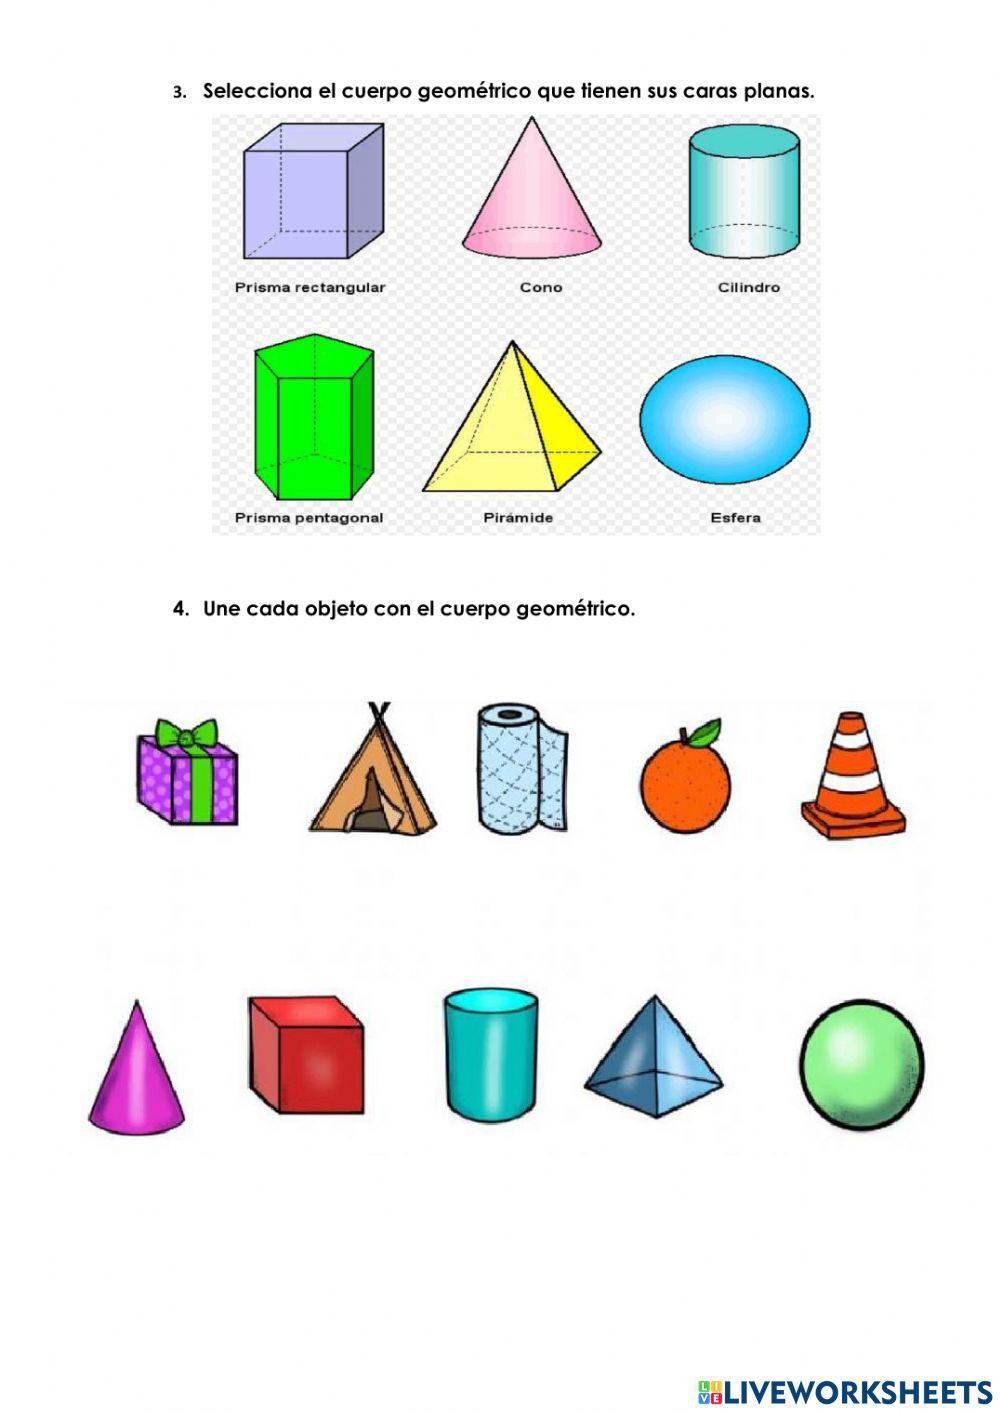 Elementos de los cuerpos geométricos